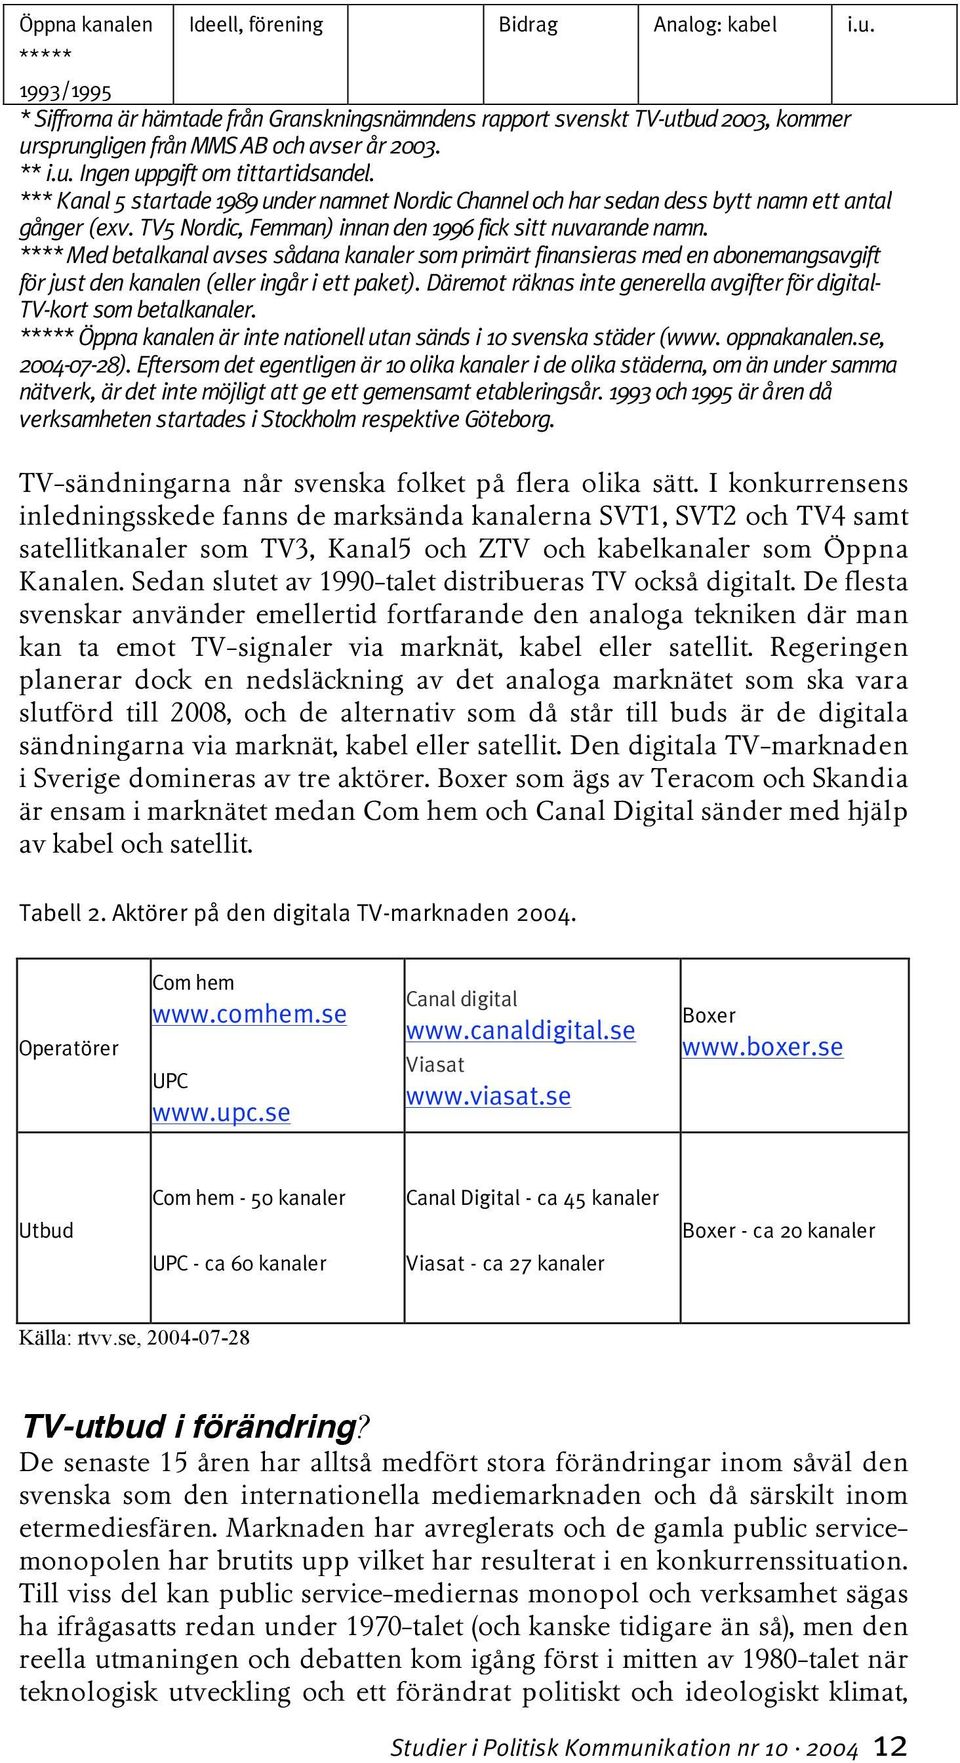 *** Kanal 5 startade 1989 under namnet Nordic Channel och har sedan dess bytt namn ett antal gånger (exv. TV5 Nordic, Femman) innan den 1996 fick sitt nuvarande namn.